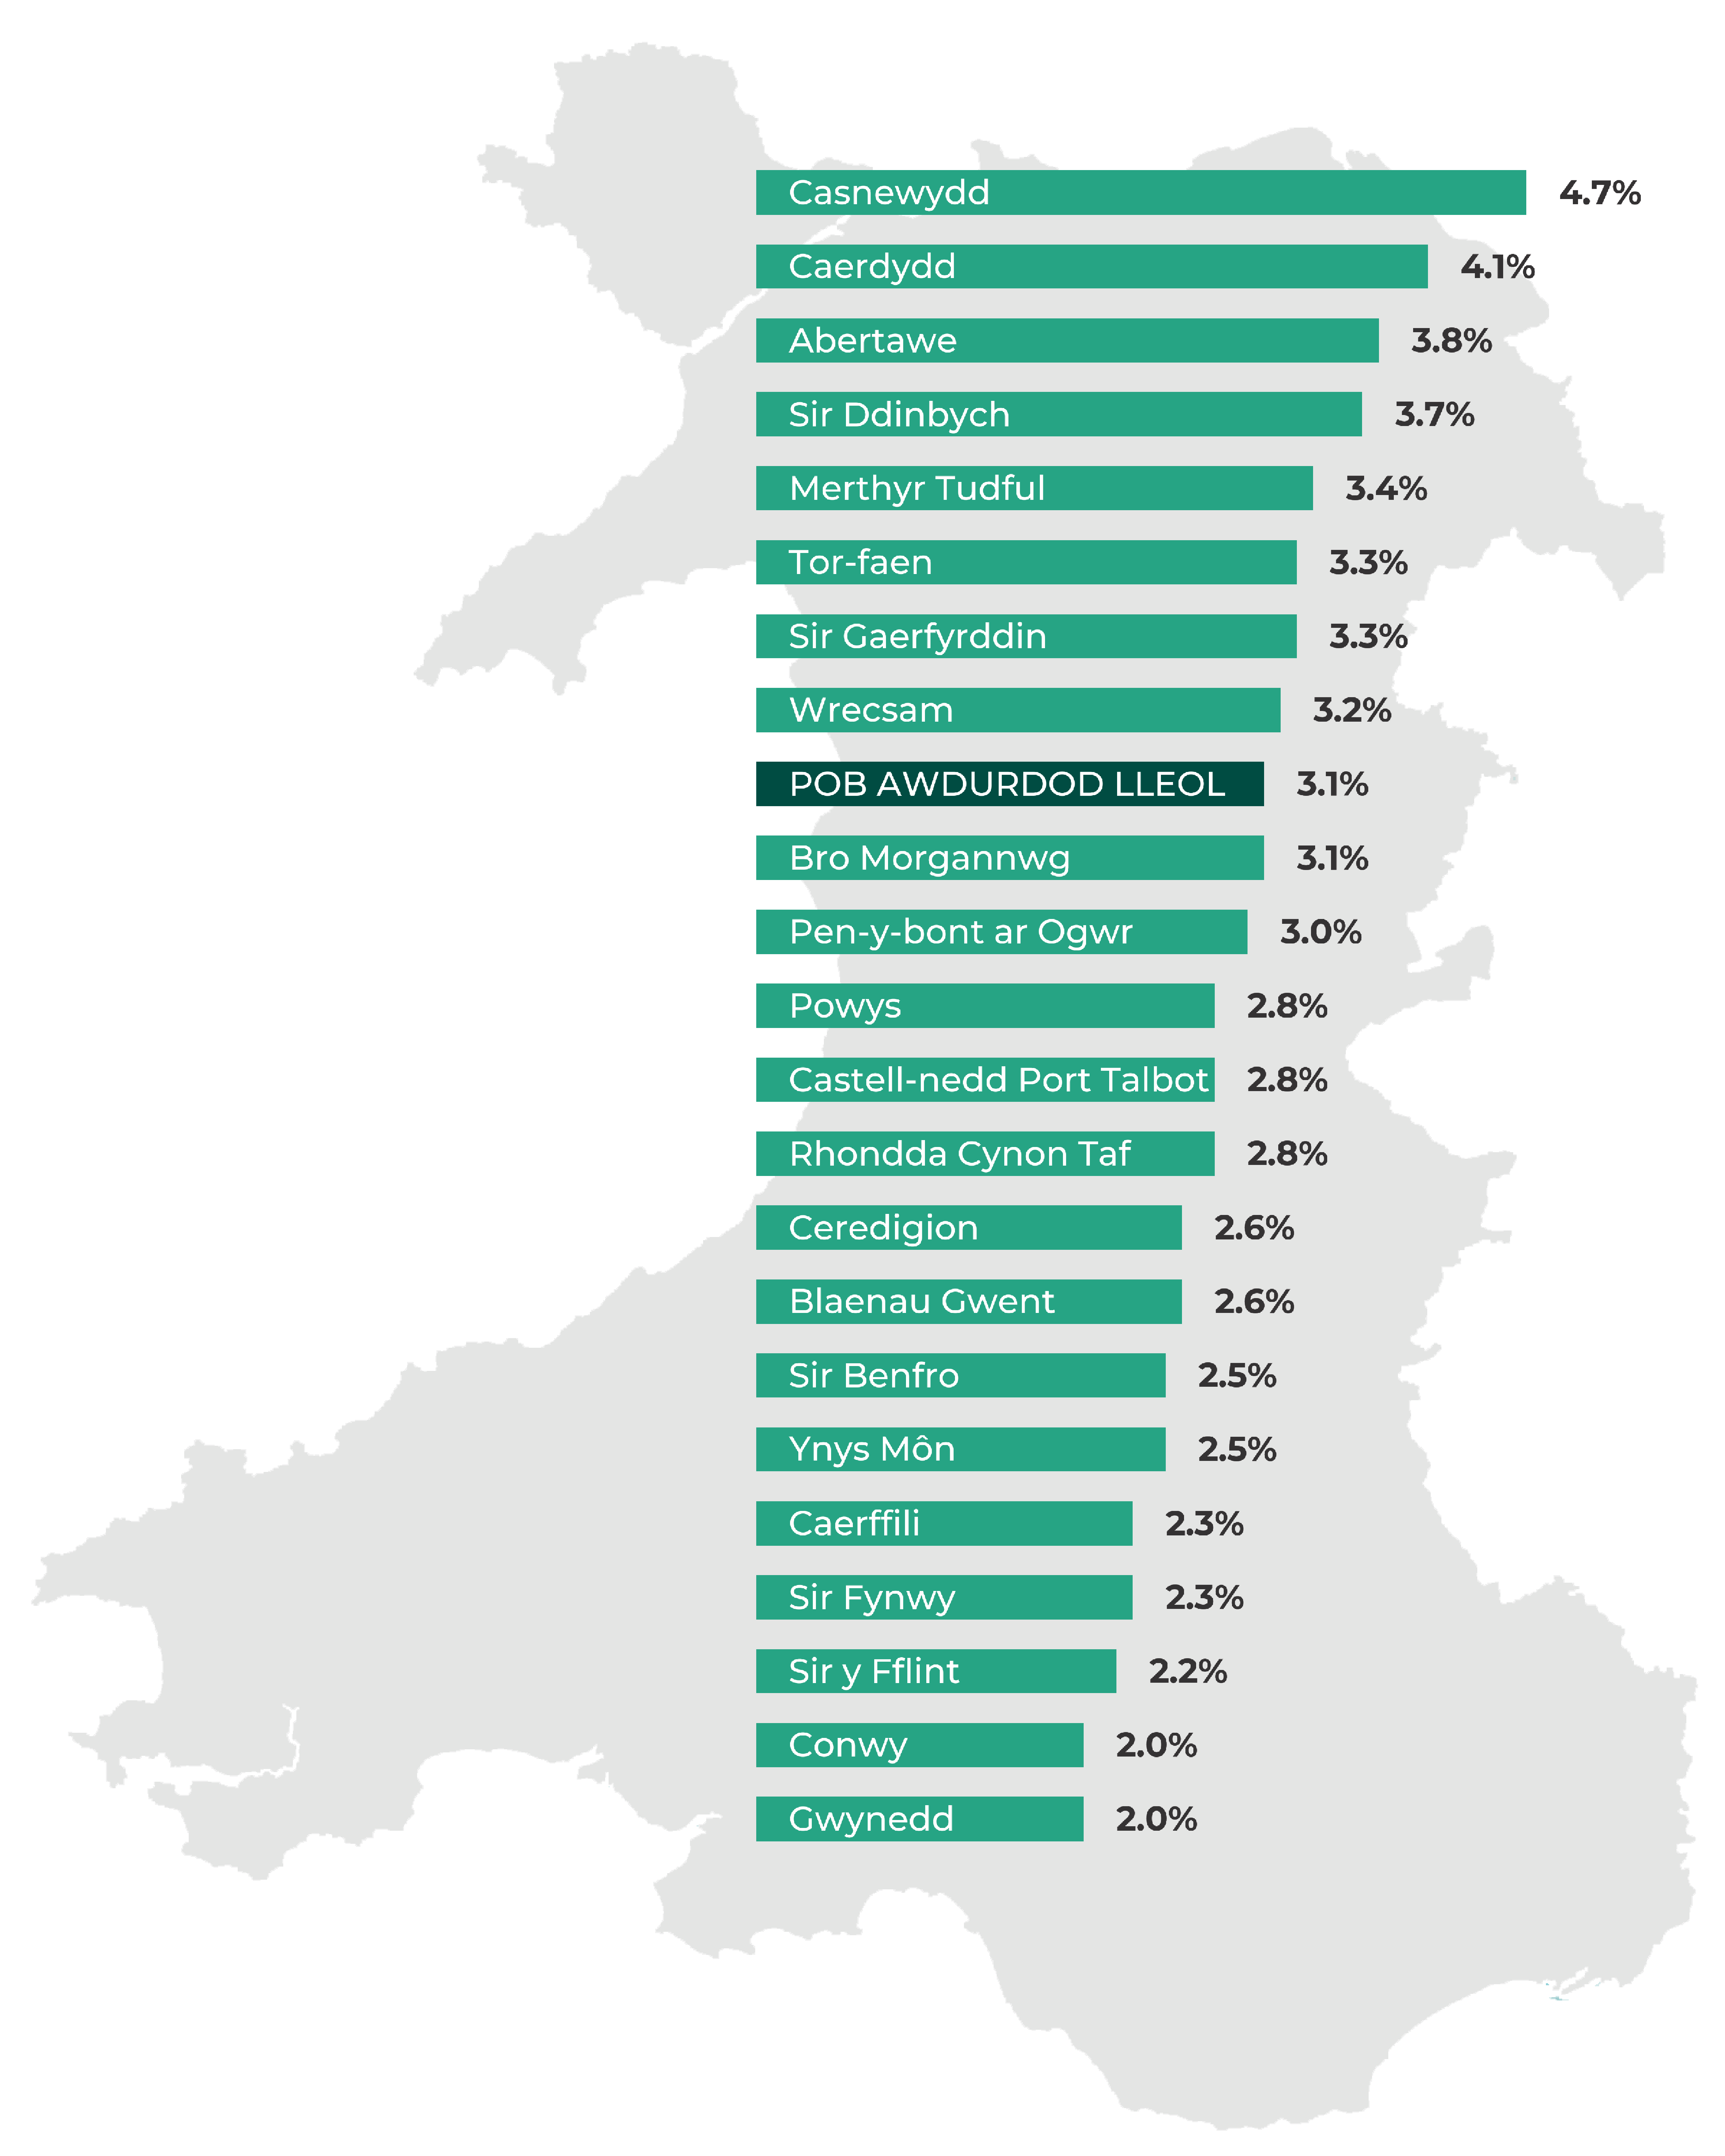 Gwynedd  2.0%, Conwy  2.0%, Sir y Fflint  2.2%, Sir Fynwy  2.3%, Caerffili  2.3%, Ynys Môn  2.5%, Sir Benfro  2.5%, Blaenau Gwent  2.6%, Ceredigion  2.6%, Rhondda Cynon Taf  2.8%, Castell-nedd Port Talbot  2.8%, Powys  2.8%, Pen-y-bont ar Ogwr  3.0%, Bro Morgannwg  3.1%, POB AWDURDOD LLEOL 3.1%, Wrecsam  3.2%, Sir Gaerfyrddin  3.3%, Tor-faen  3.3%, Merthyr Tudful  3.4%, Sir Ddinbych  3.7%, Abertawe  3.8%, Caerdydd  4.1%, Casnewydd  4.7%.